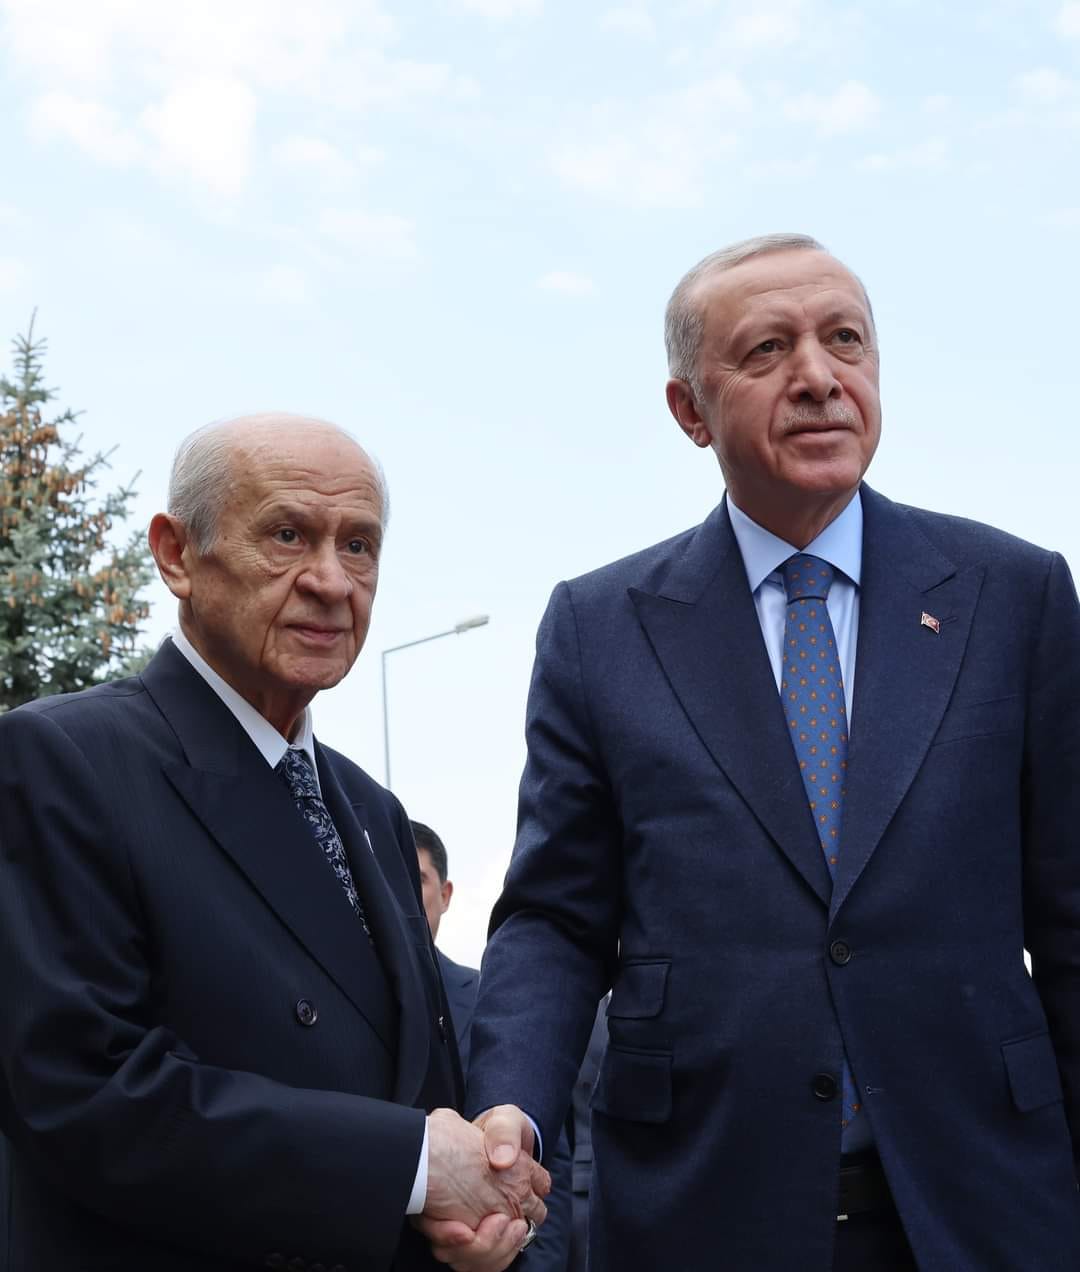 Cumhurbaşkanı Recep Tayyip Erdoğan, MHP Genel Başkanı Devlet Bahçeli'yi Evde Ziyaret Etti